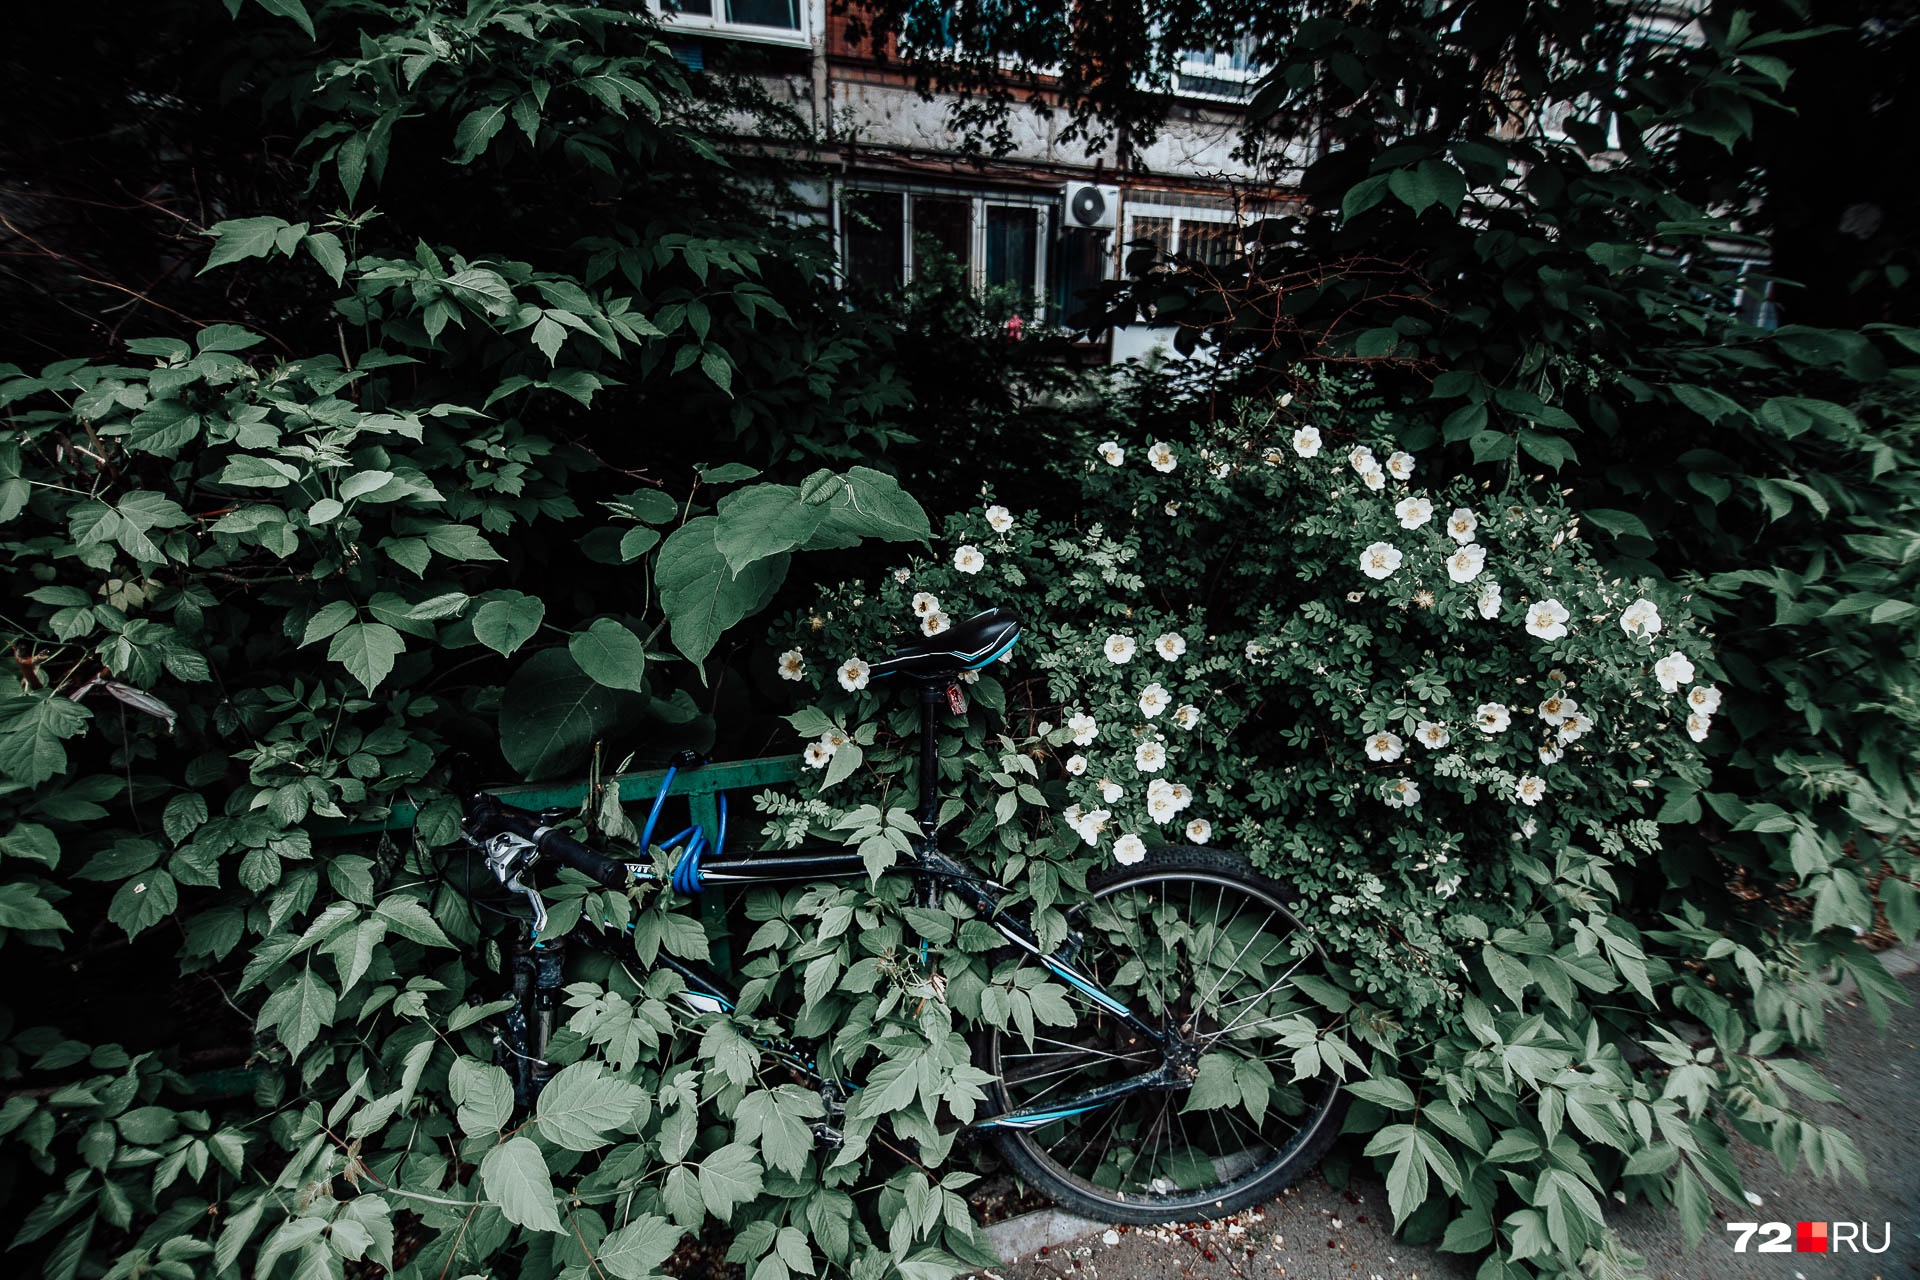 Милый куст возле дома, припаркованный велосипед. Единственный минус — кто-то открутил у него одно колесо